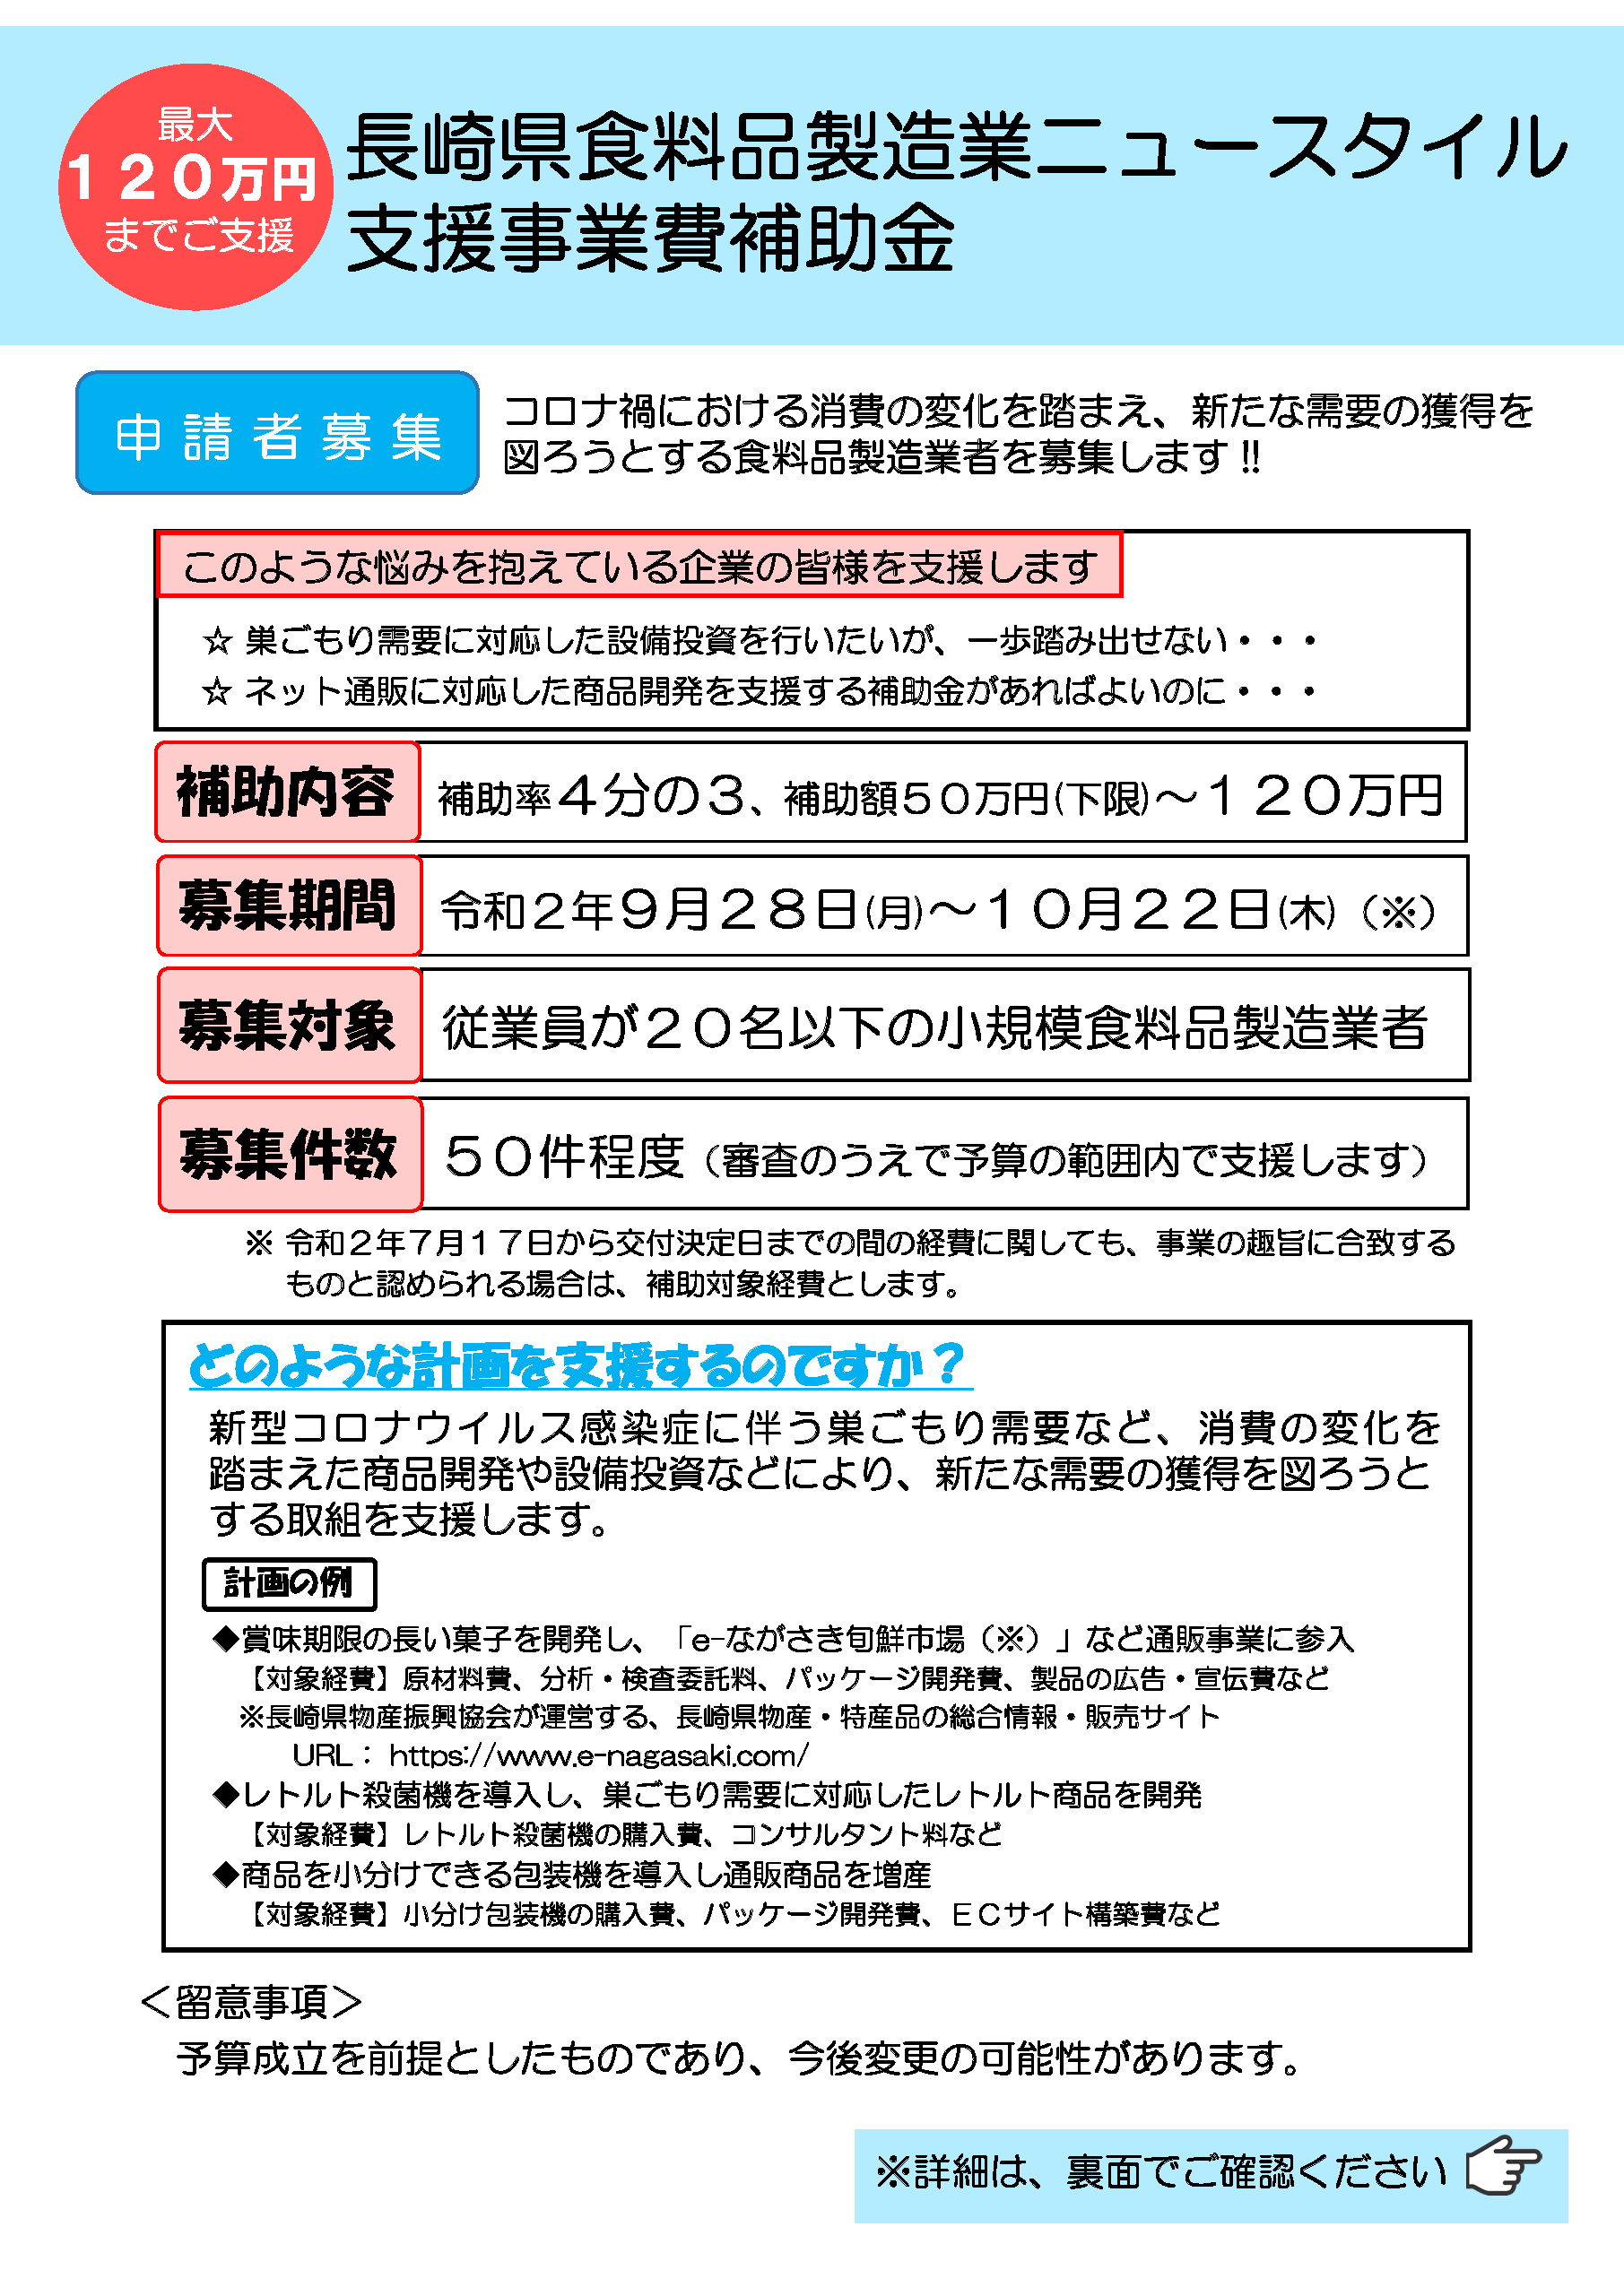 長崎県食料品製造業ニュースタイル支援事業費補助金の募集について